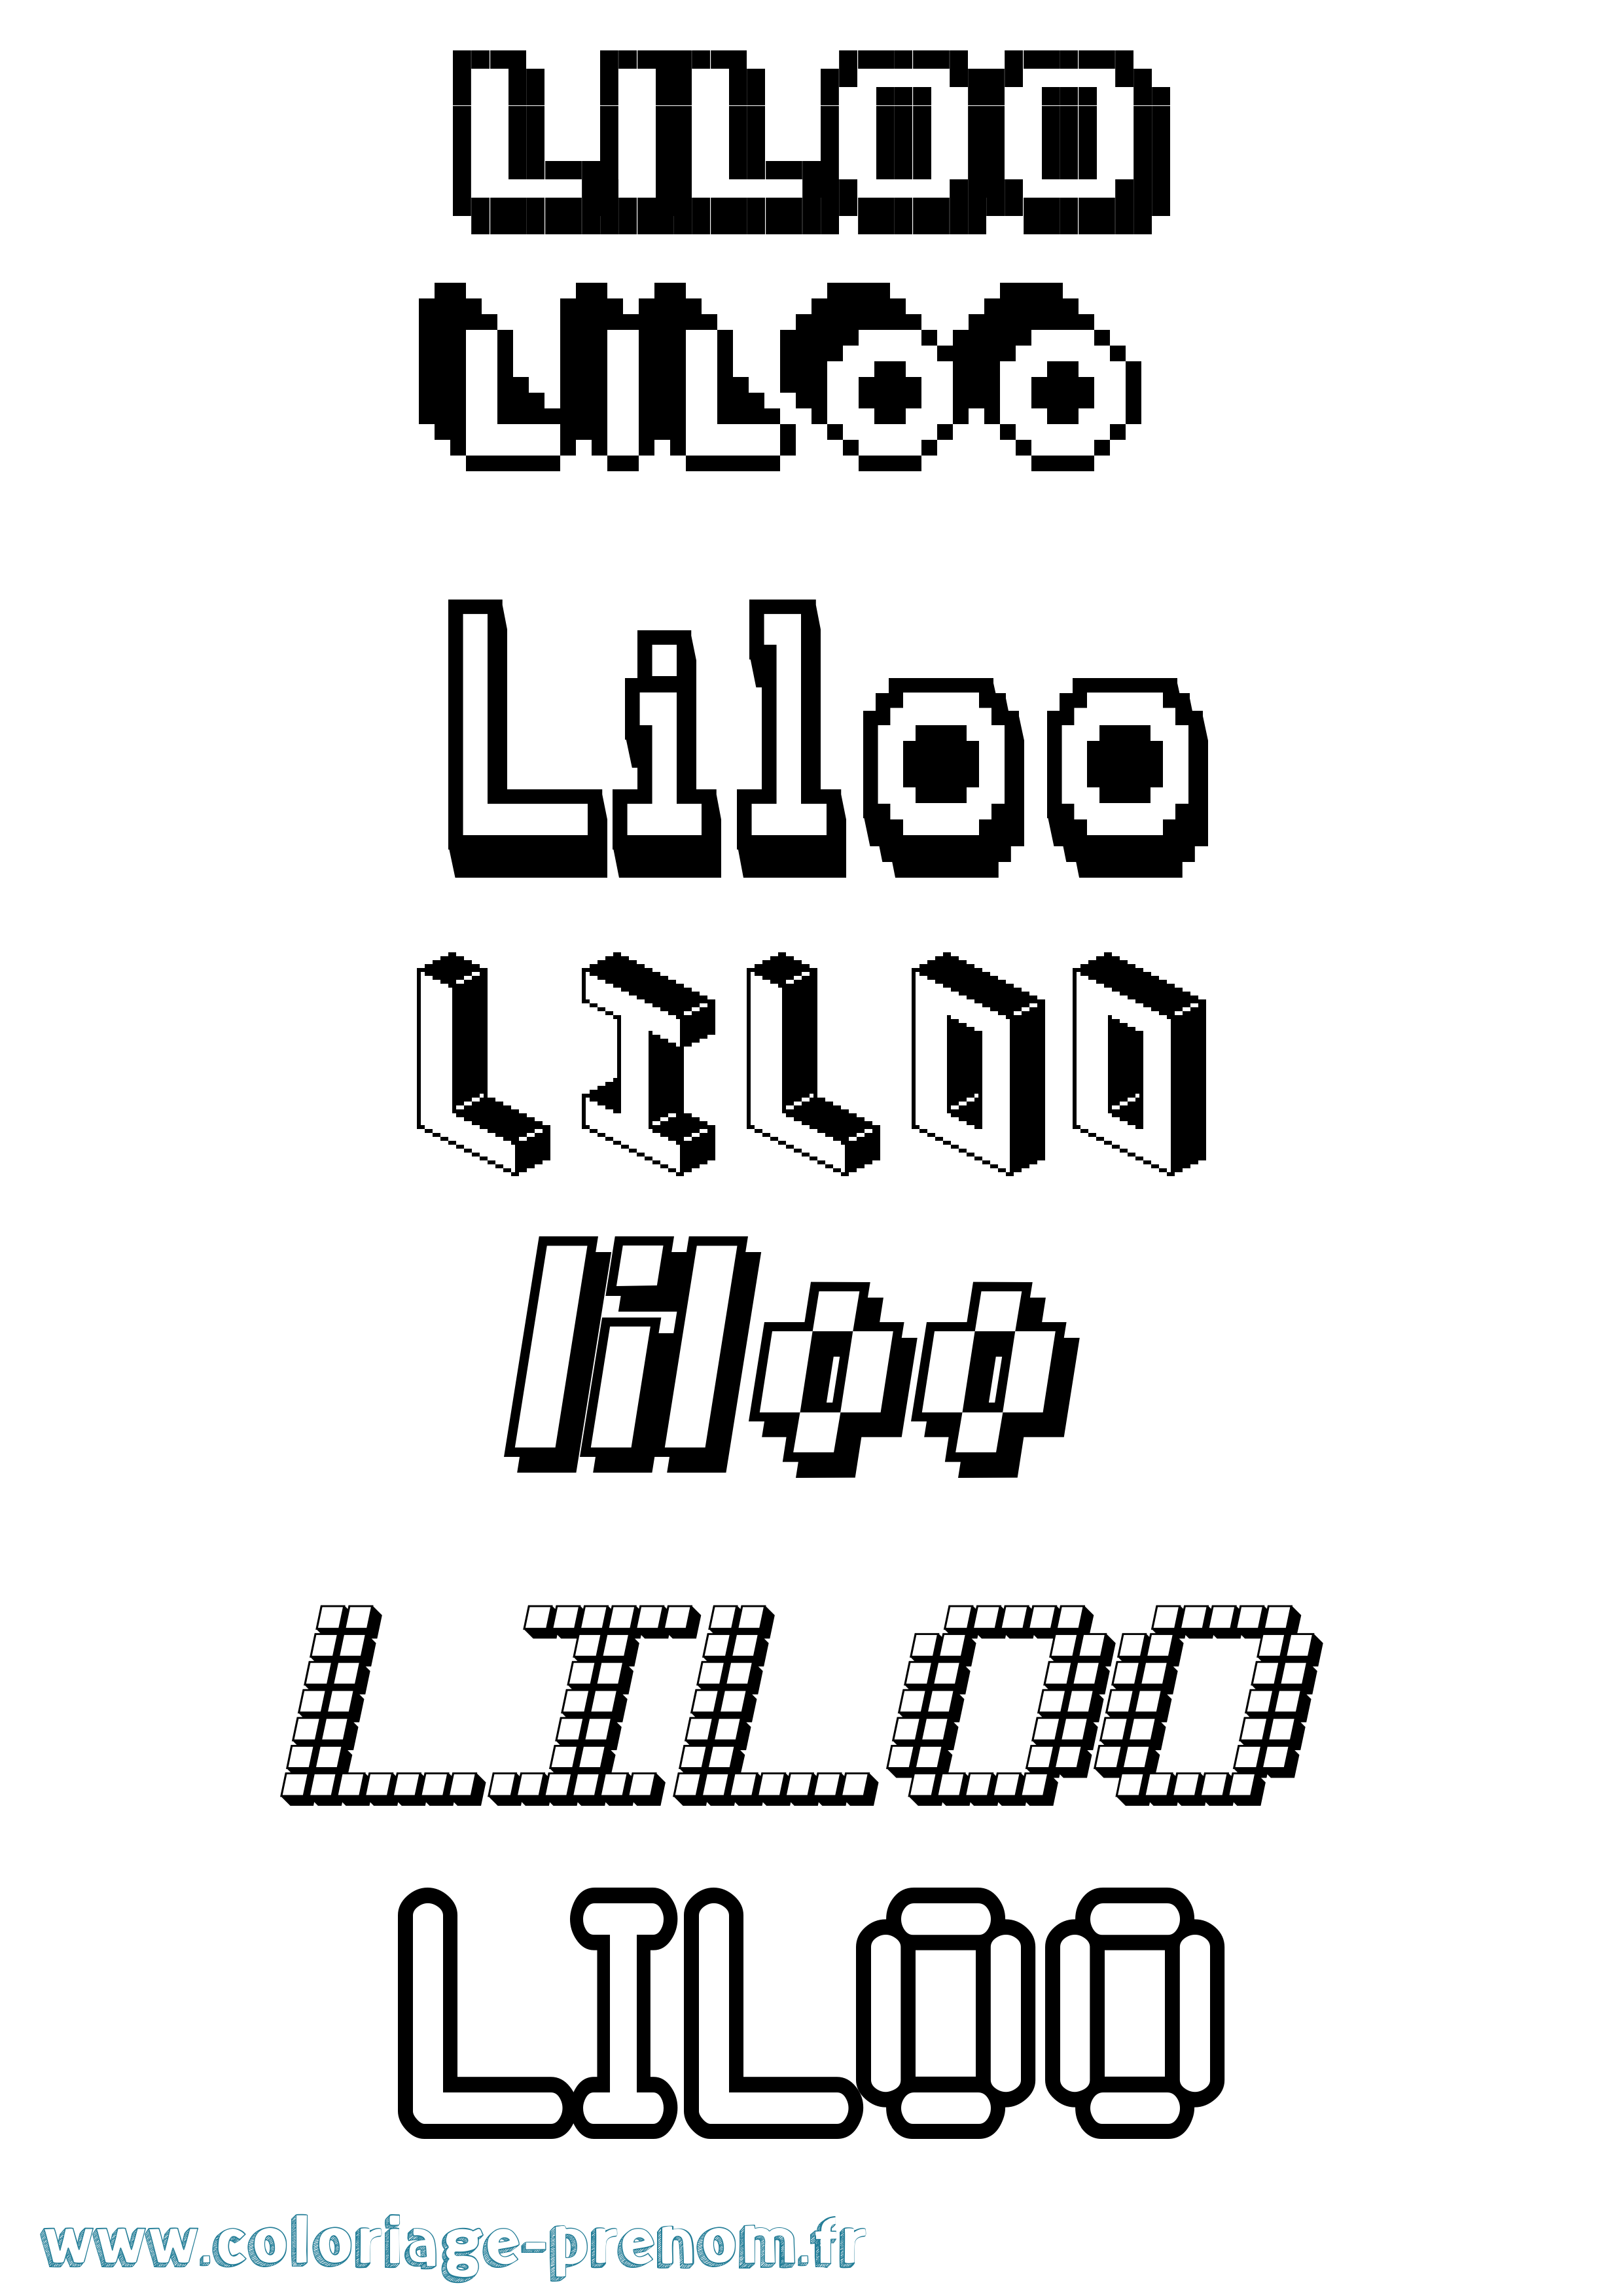 Coloriage prénom Liloo Pixel